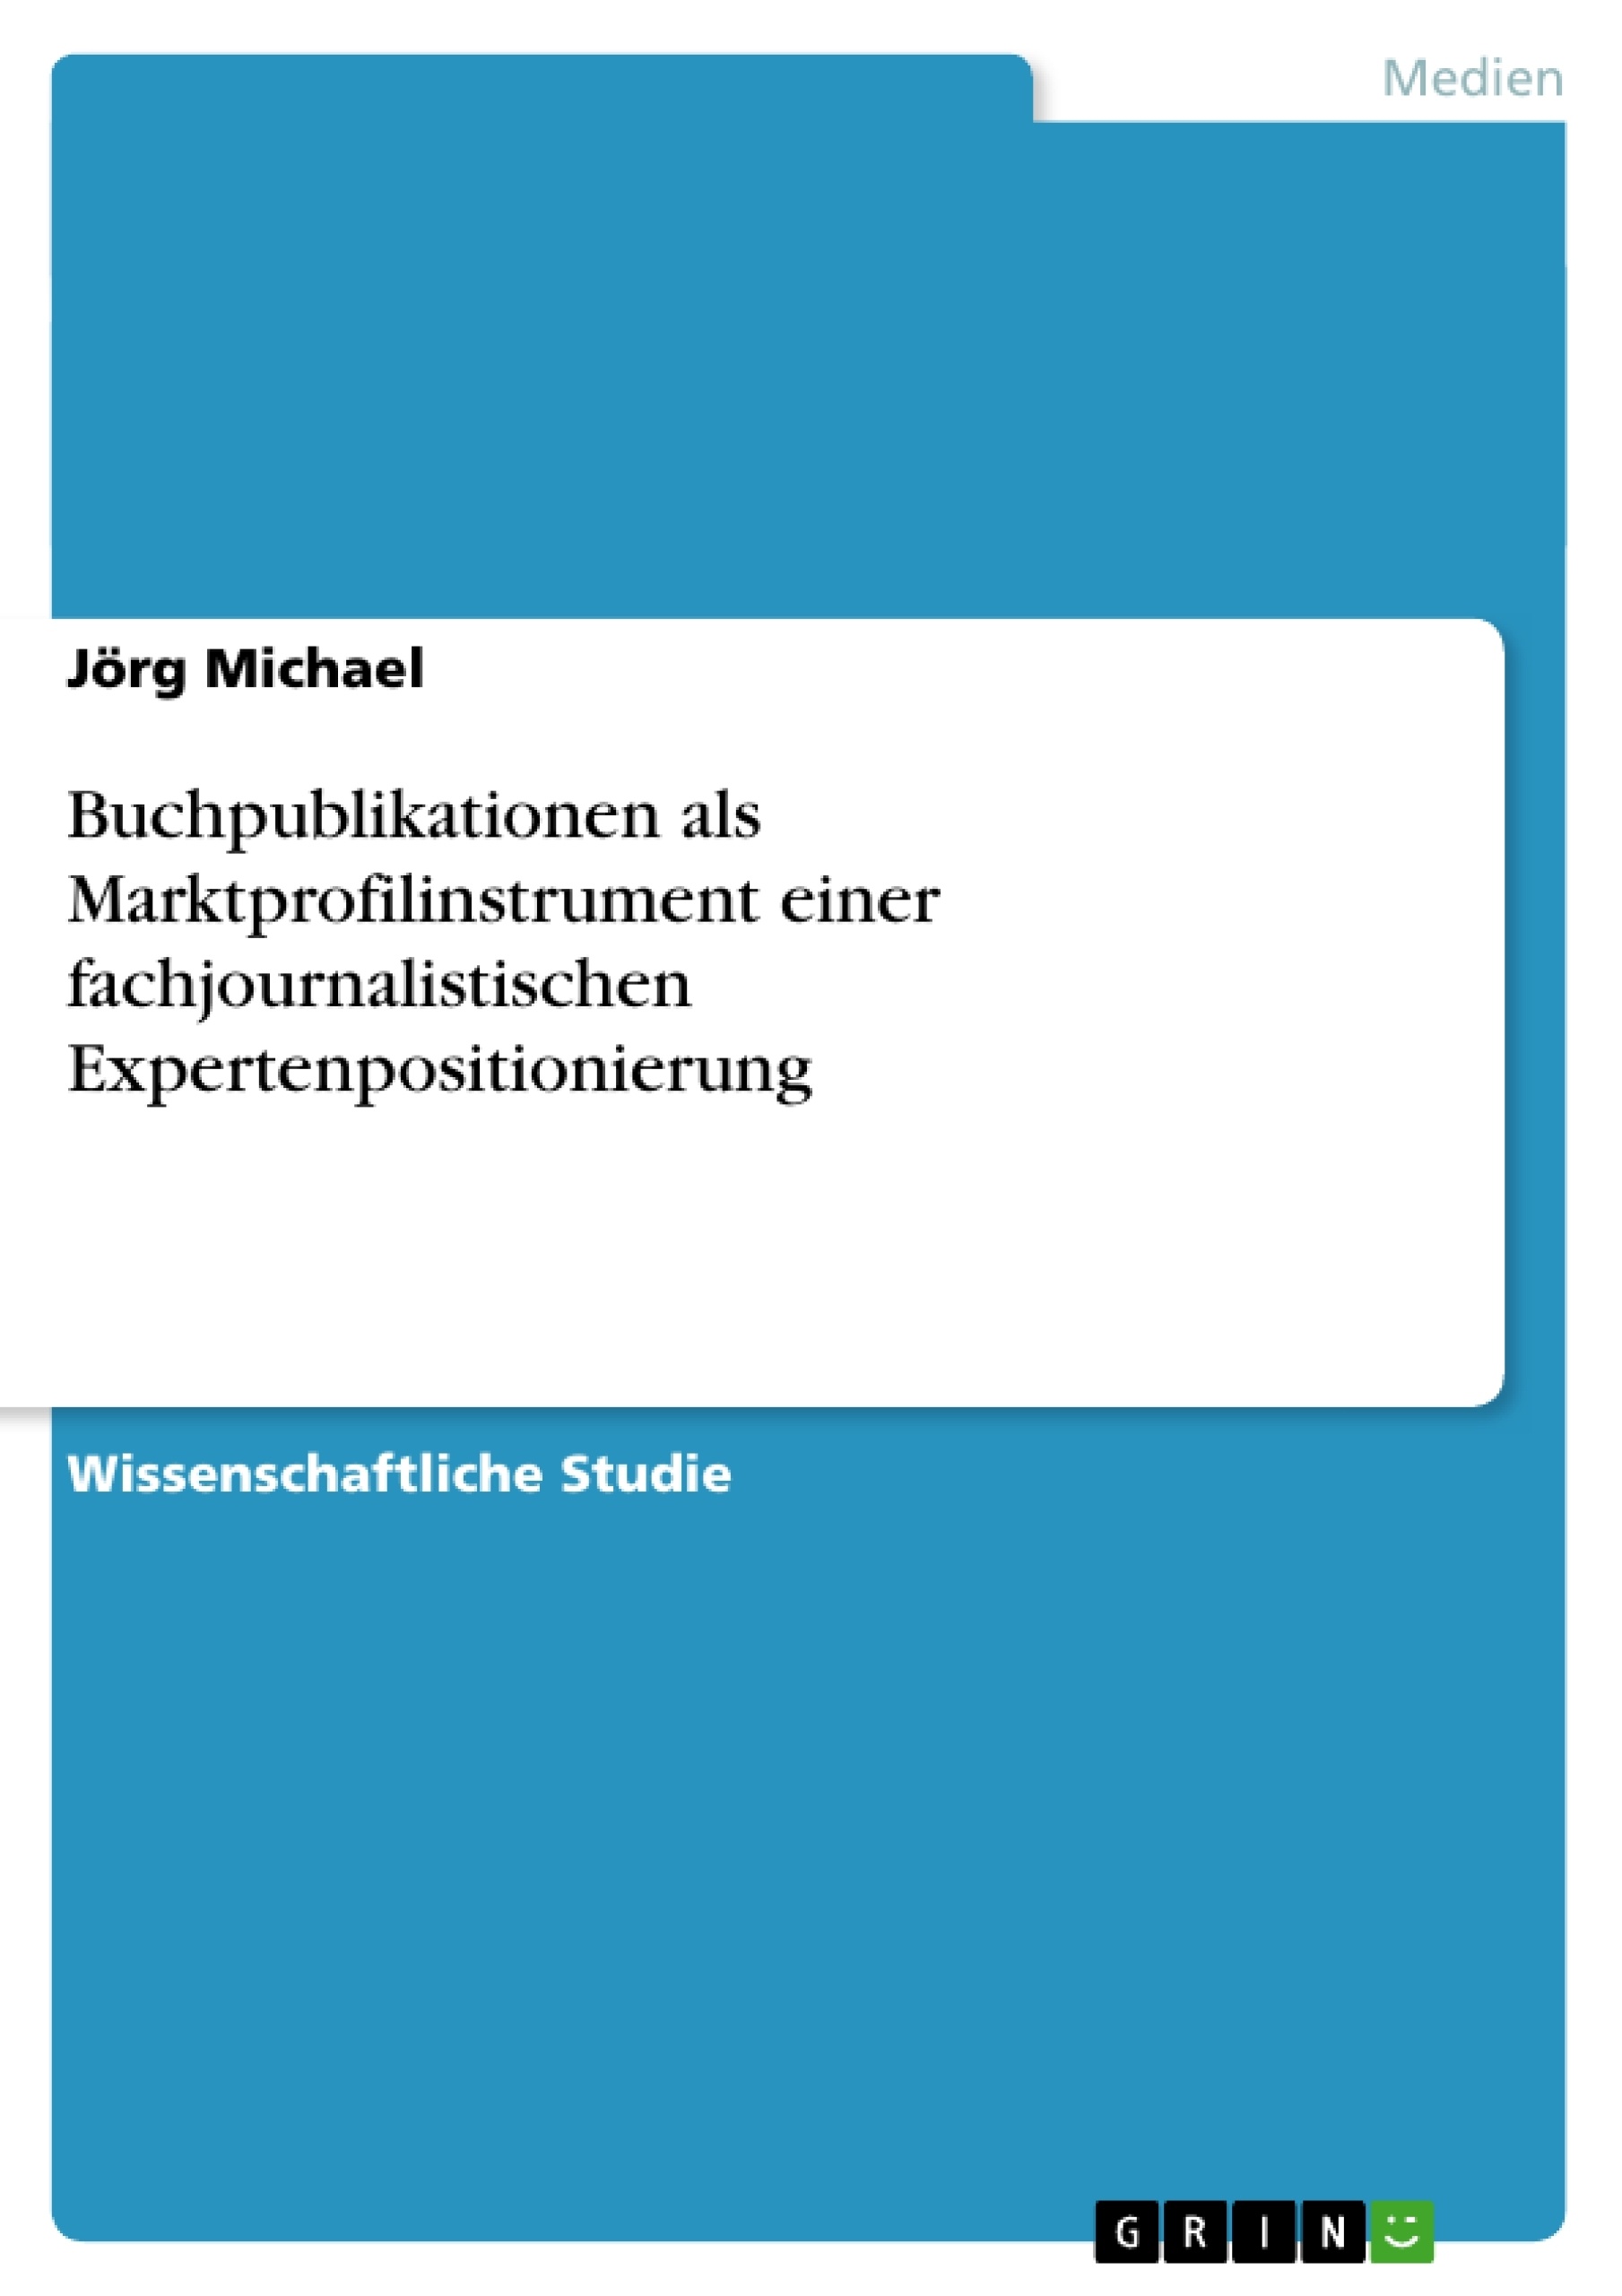 Título: Buchpublikationen als Marktprofilinstrument einer fachjournalistischen Expertenpositionierung